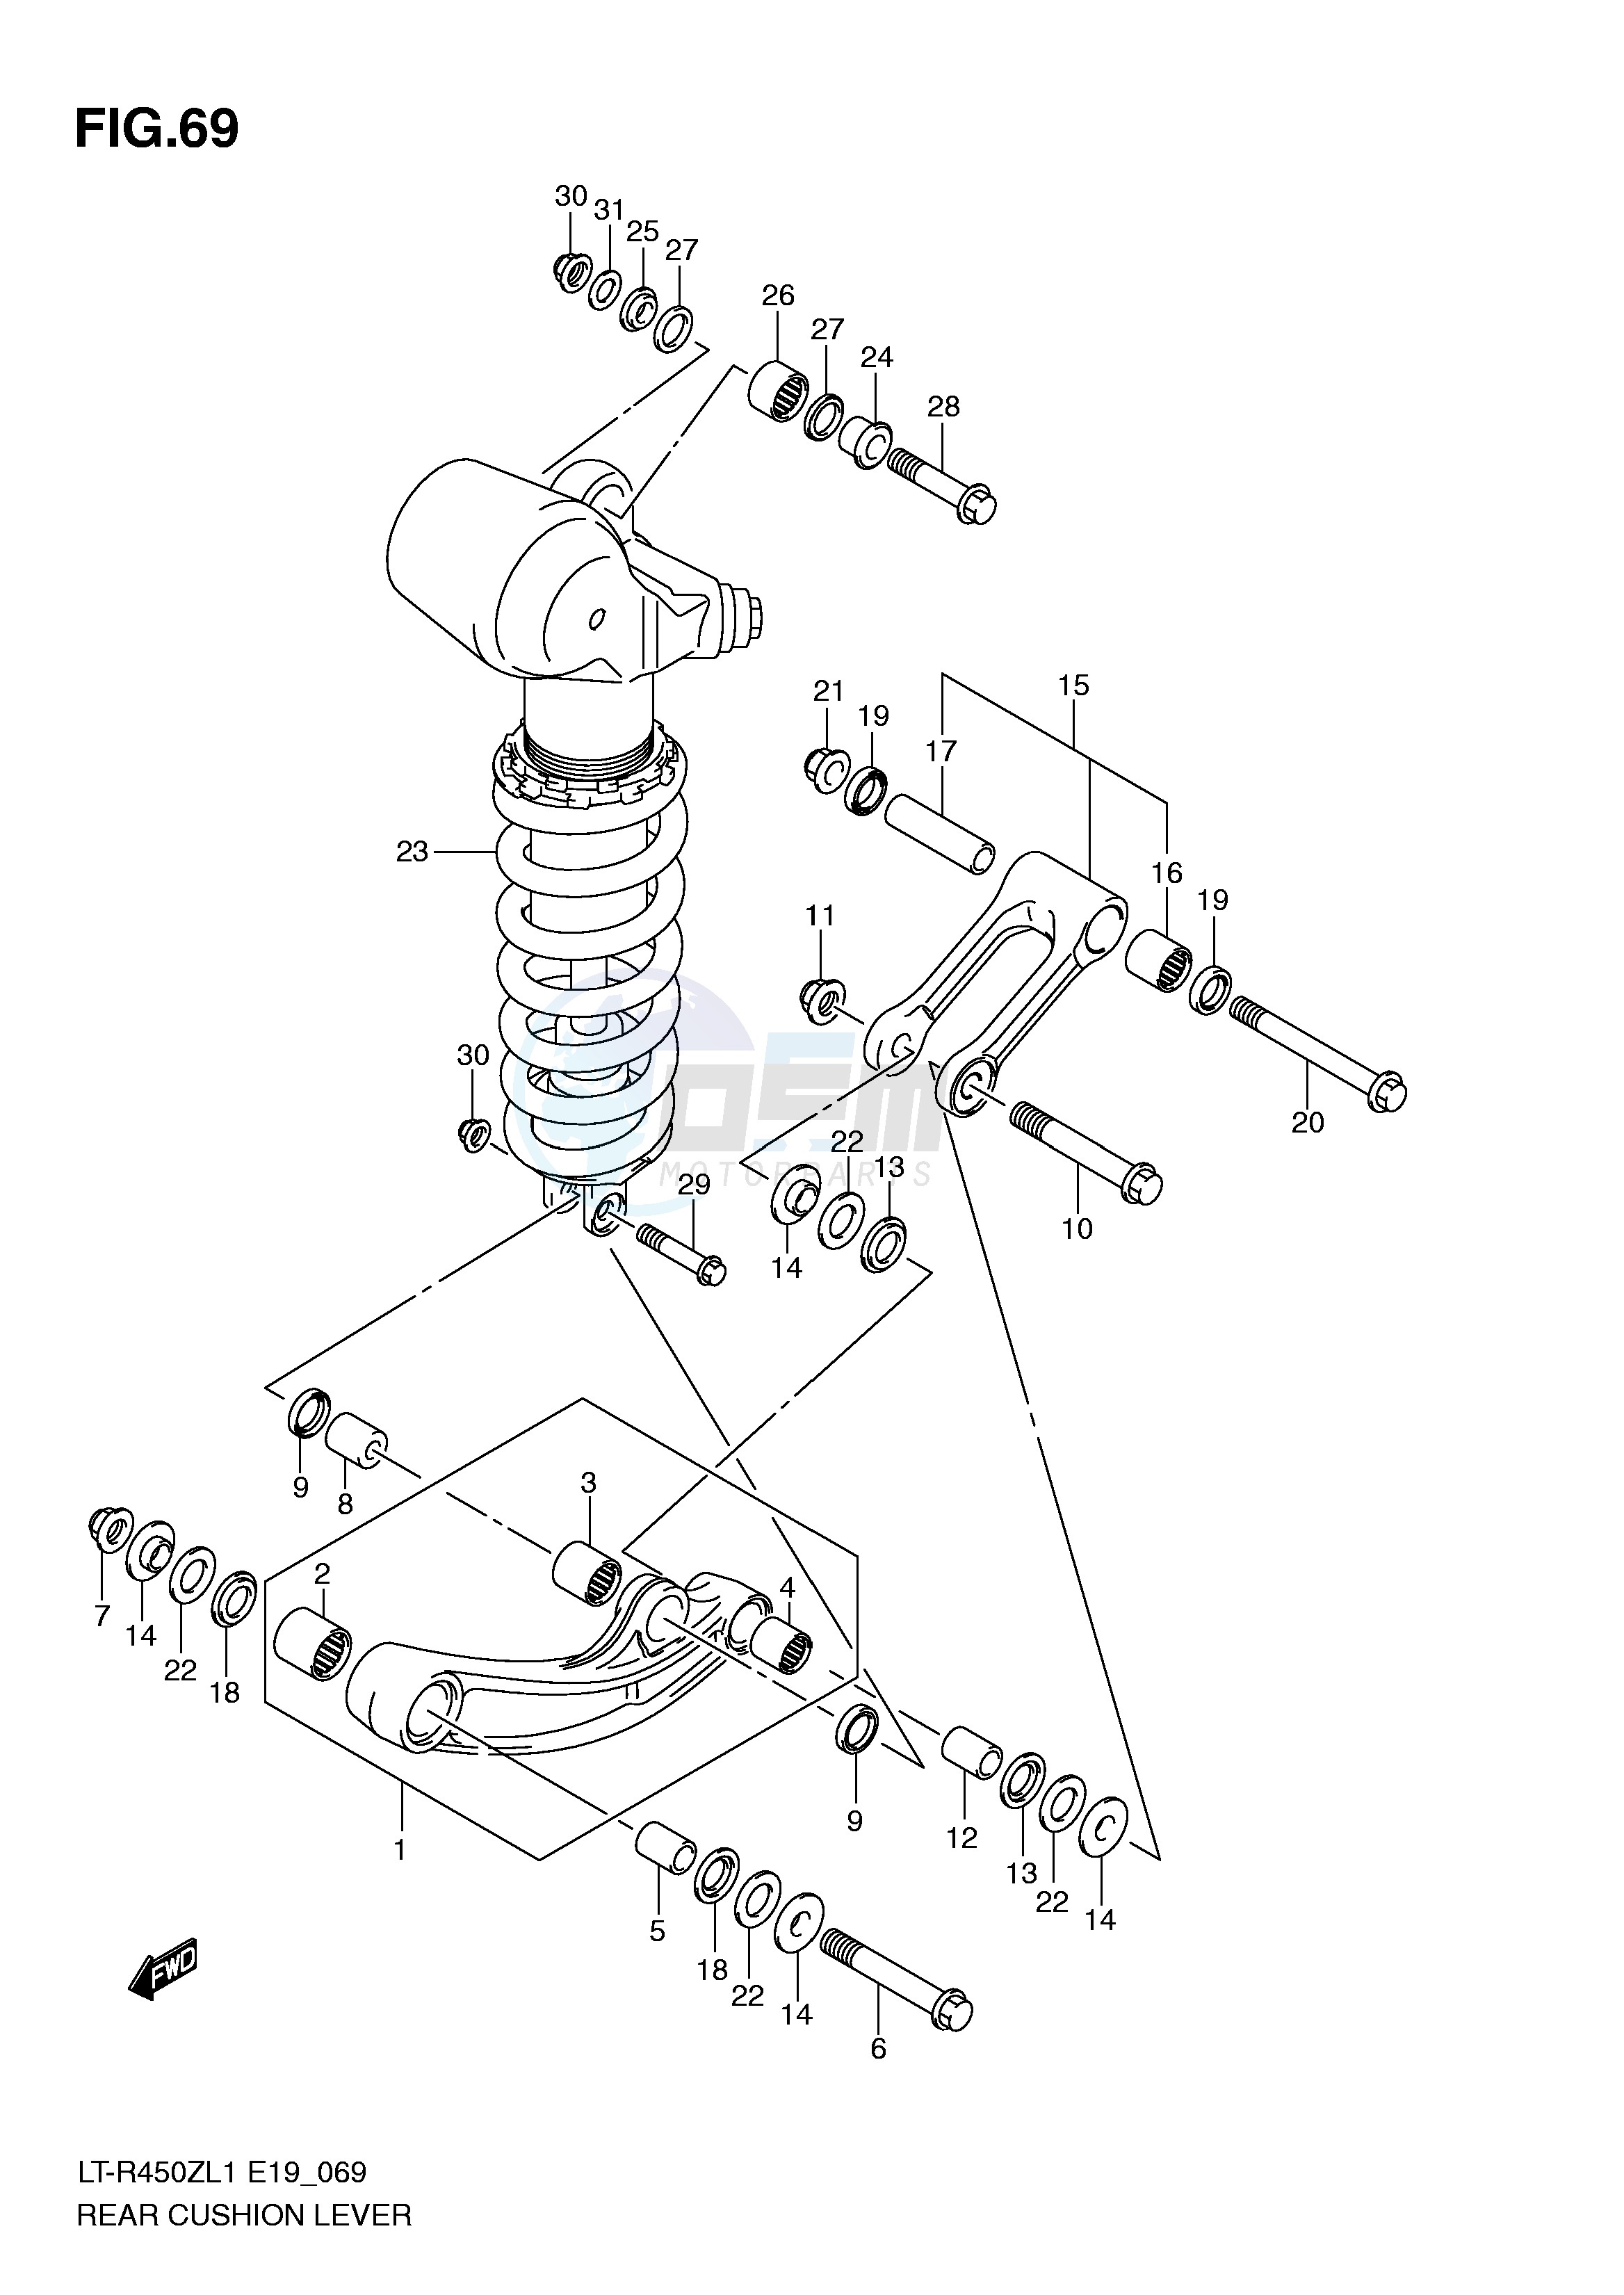 REAR CUSHION LEVER (LT-R450L1 E19) blueprint